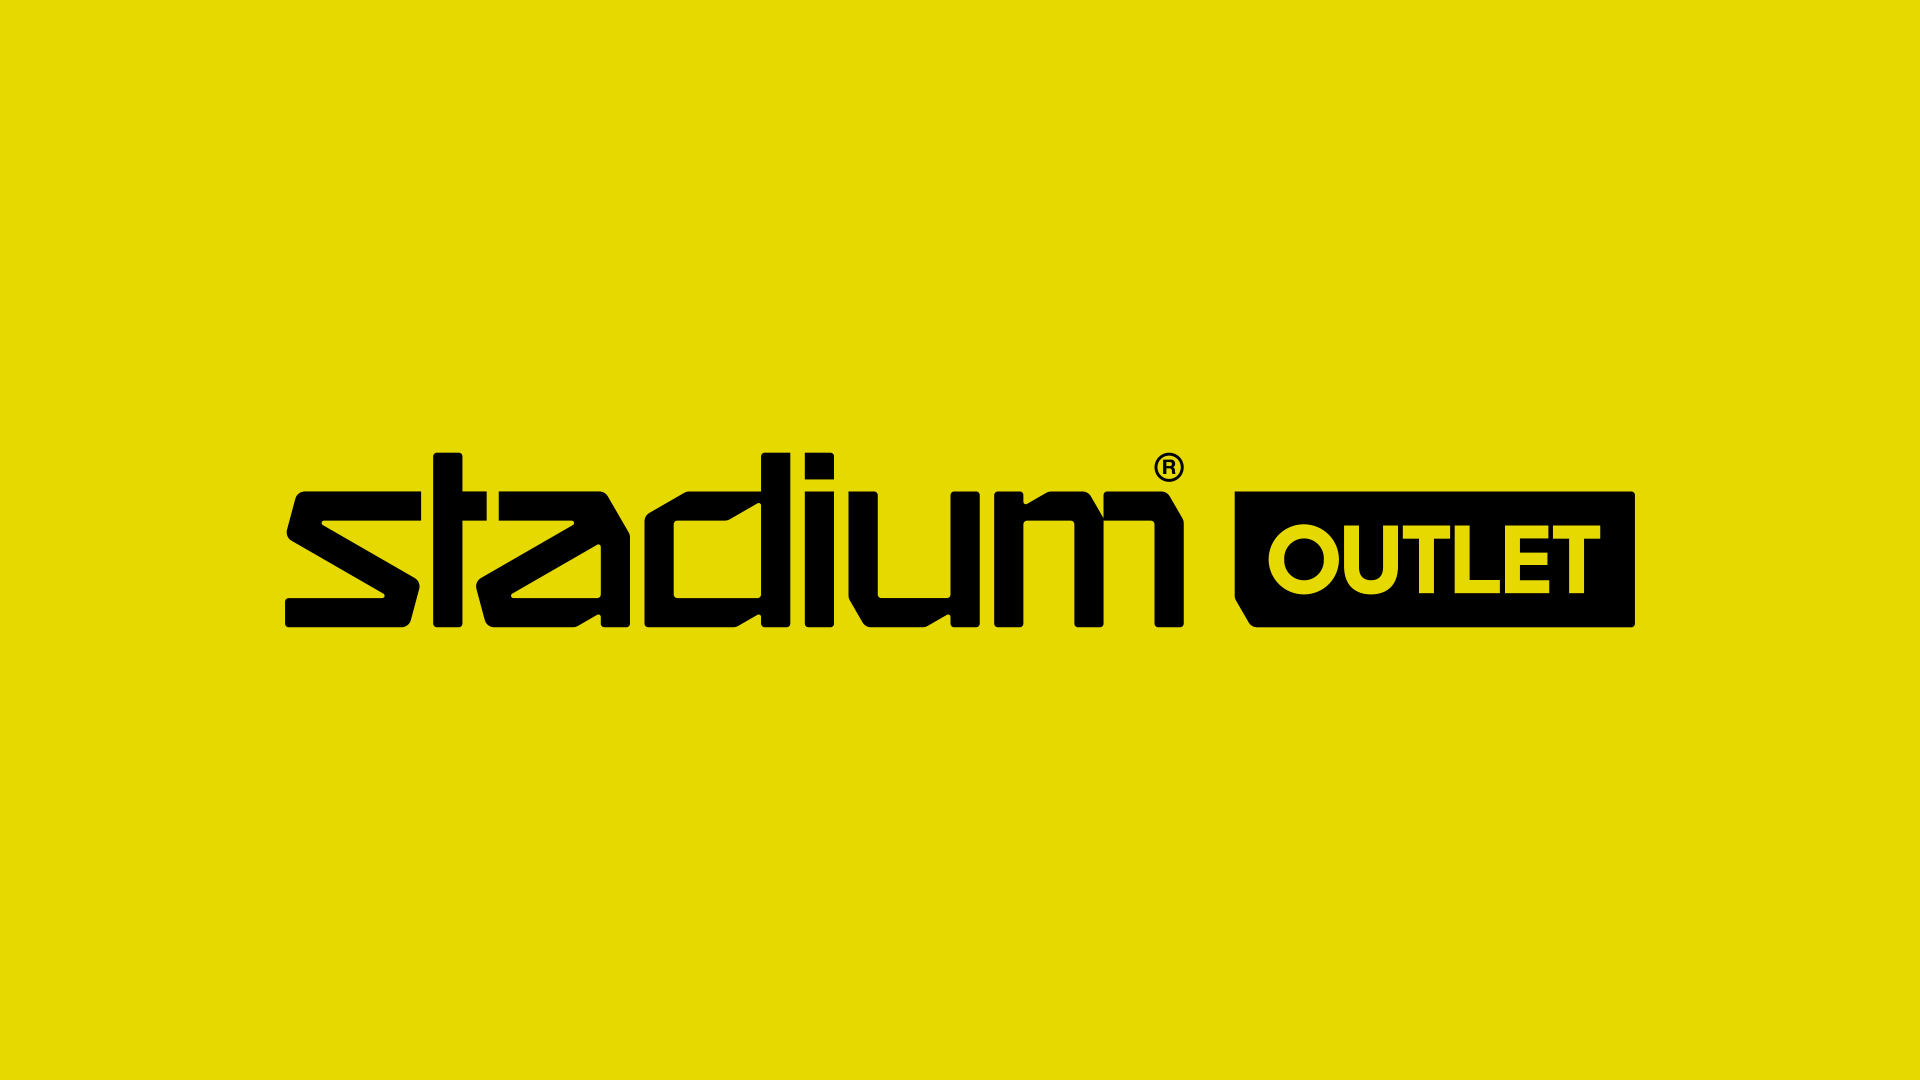 www.stadiumoutlet.se